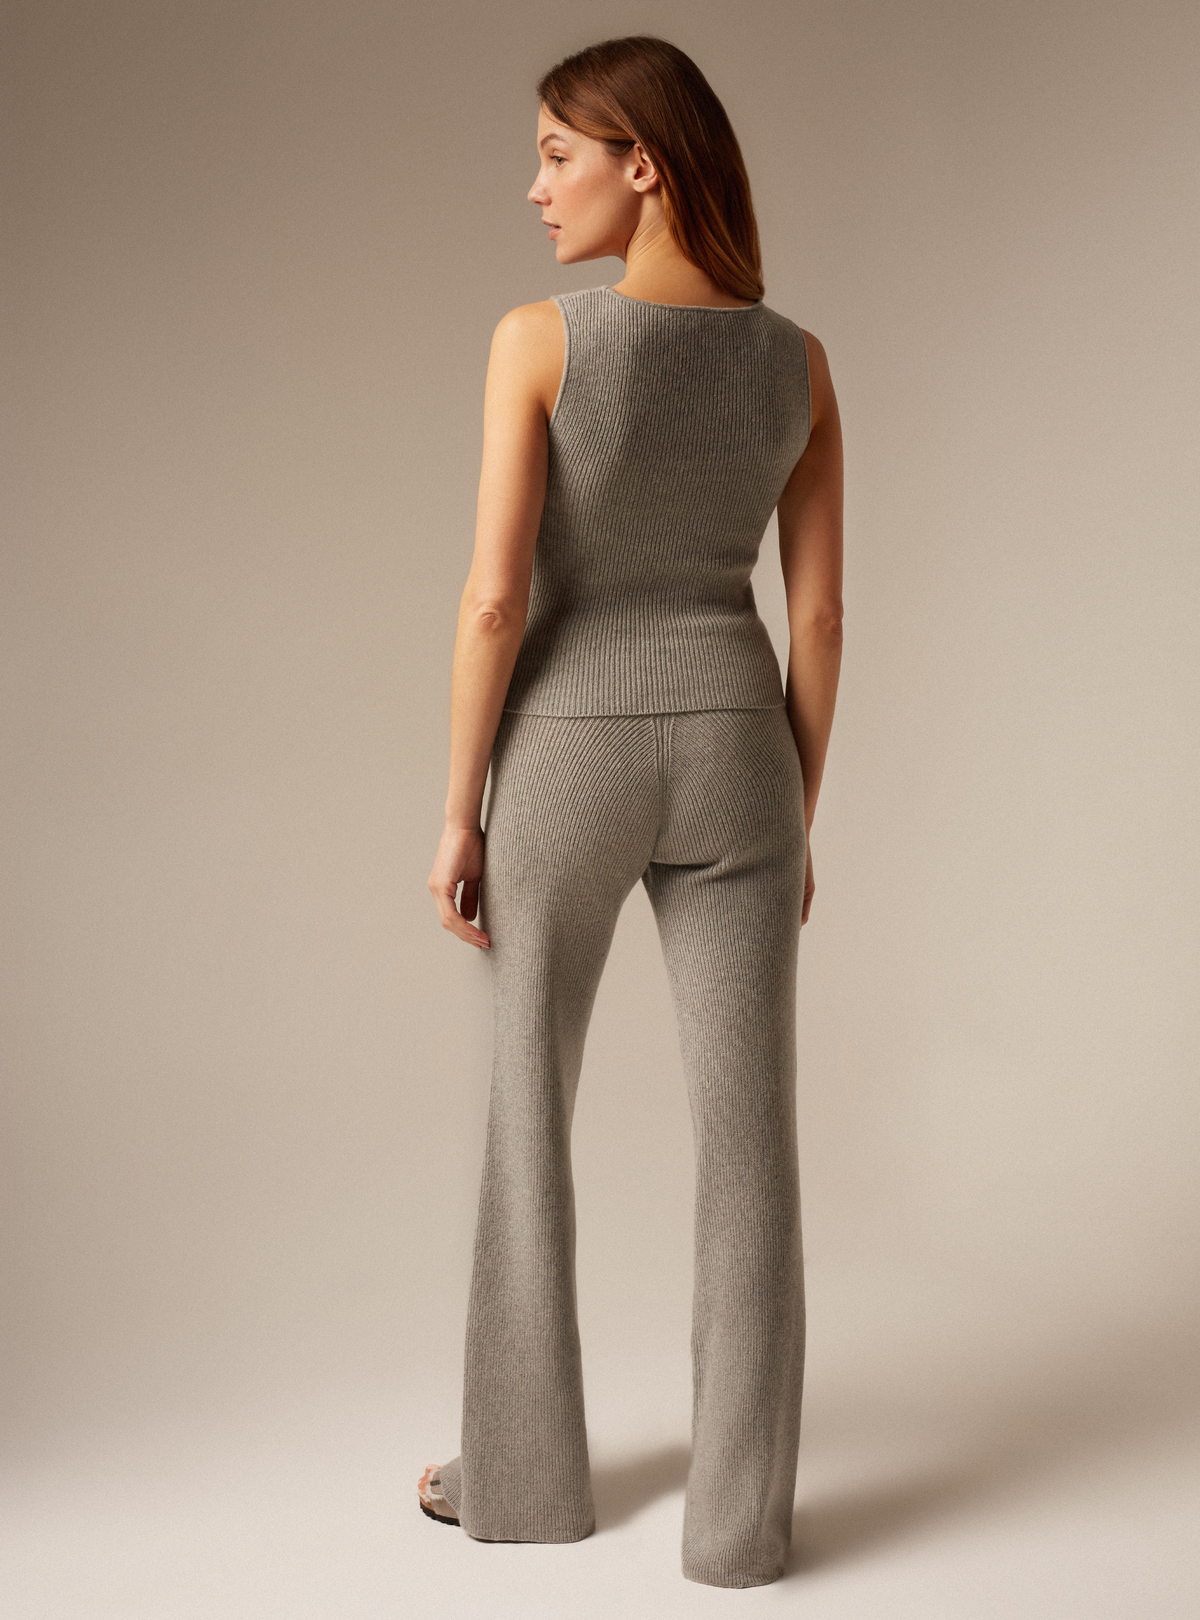 Grey cashmere tank top women&#39;s knitwear